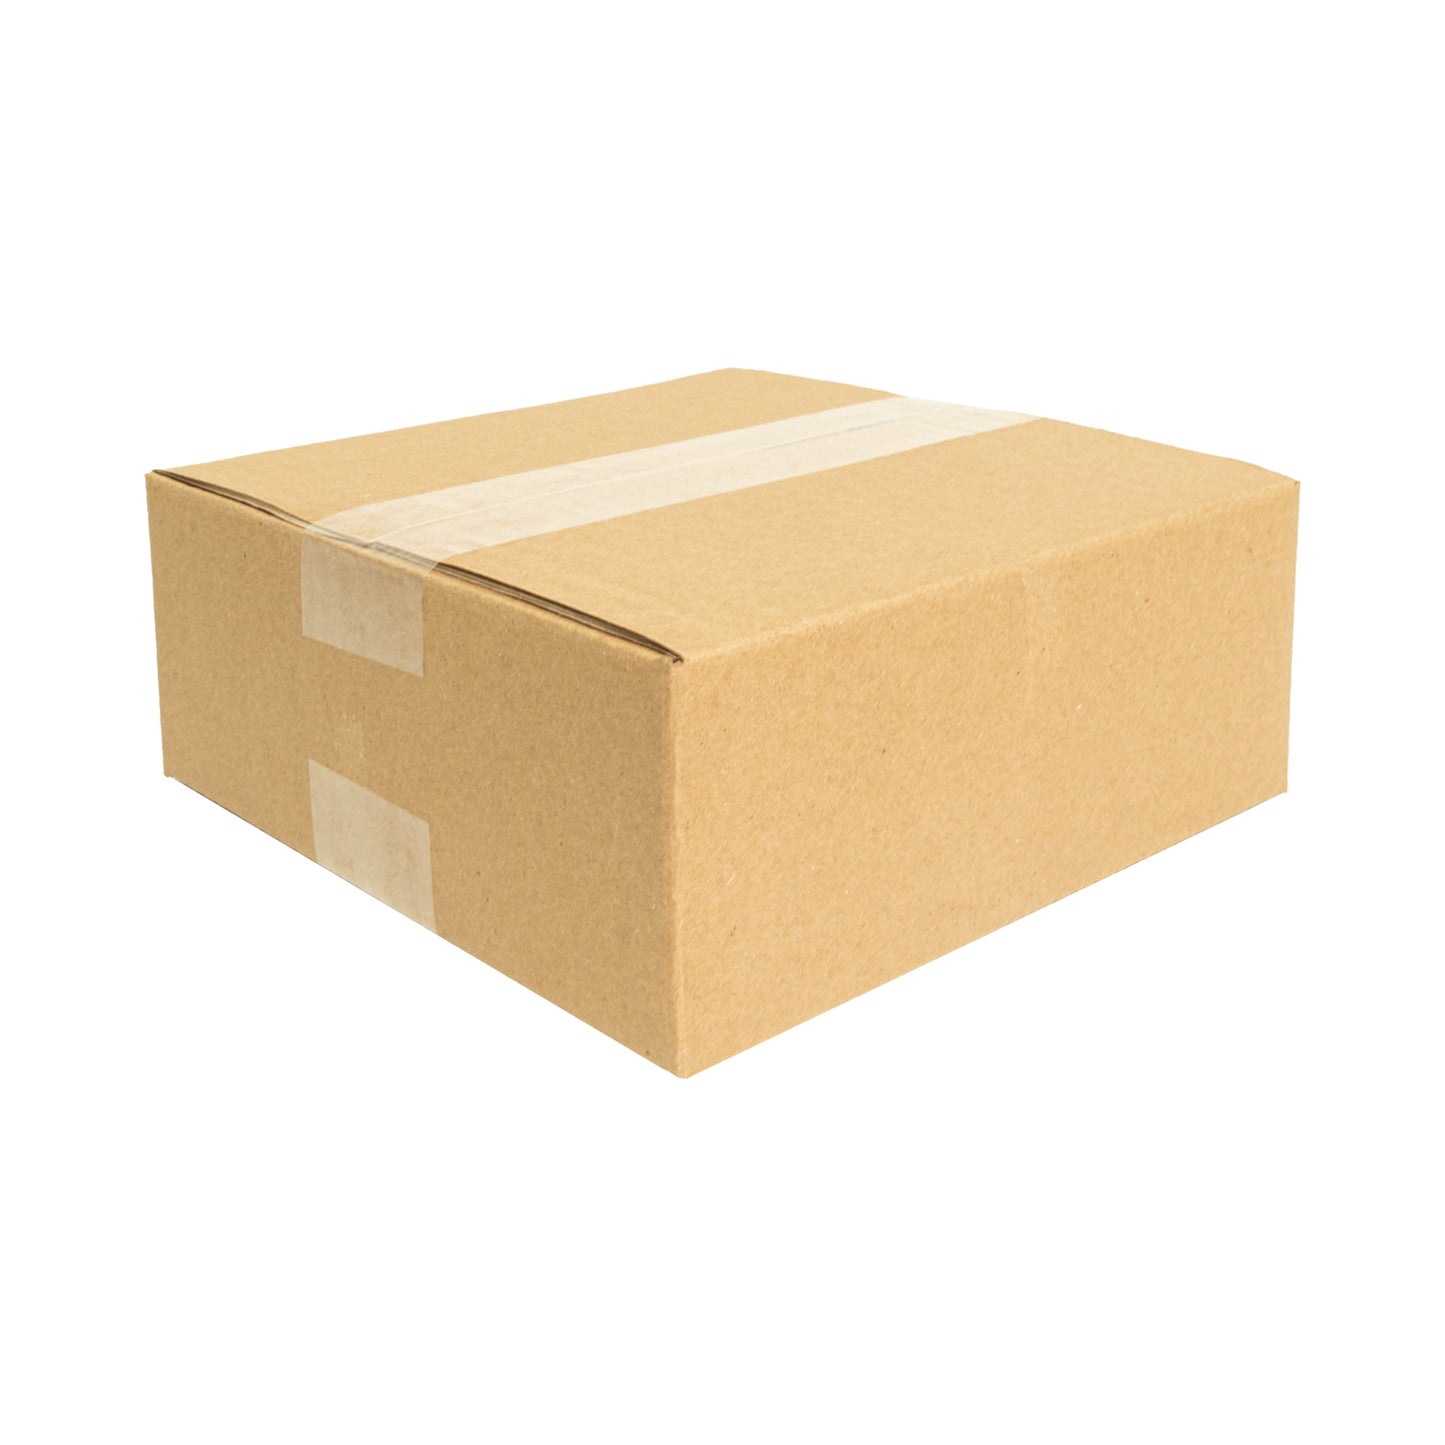 Cajas de cartón para envíos #7